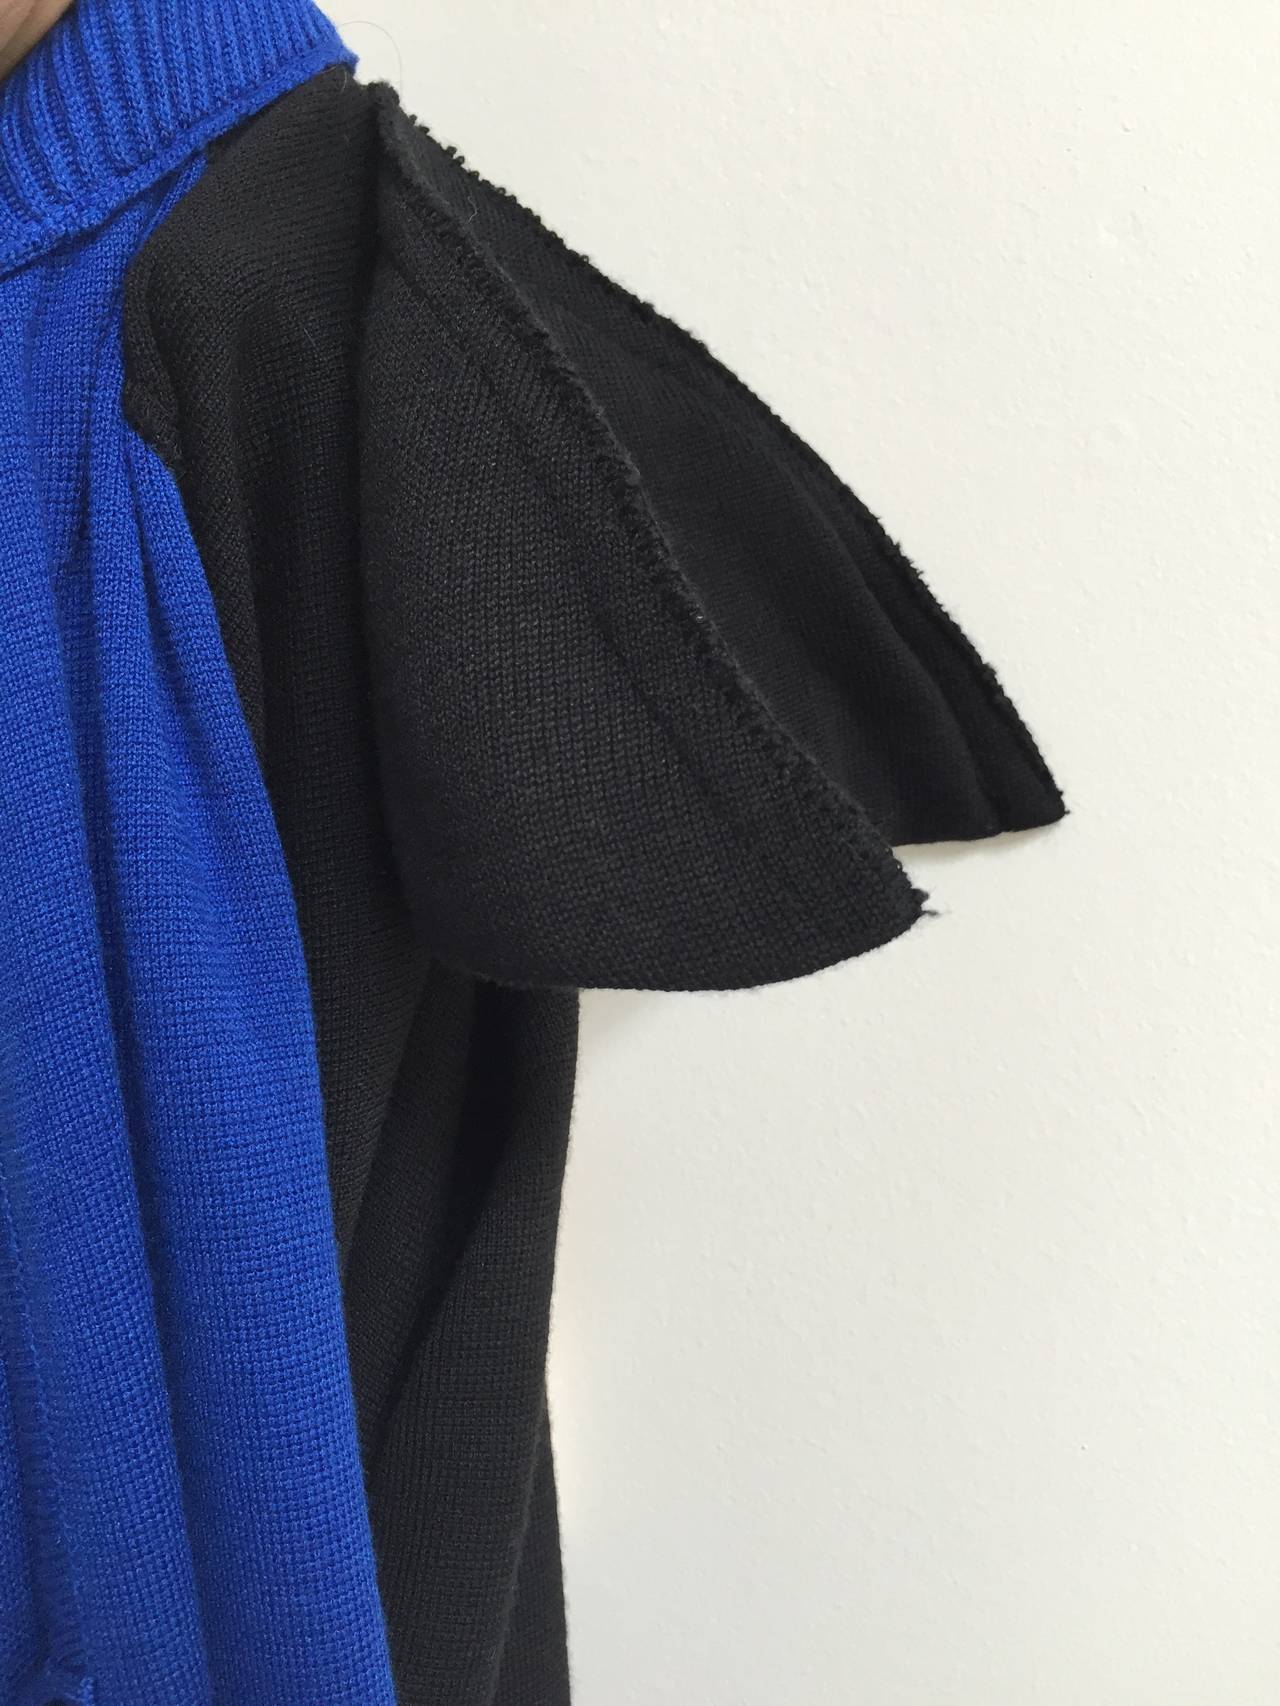 Emanuel Ungaro Parallele Paris 1980s Knit Dress Size 8. For Sale 4